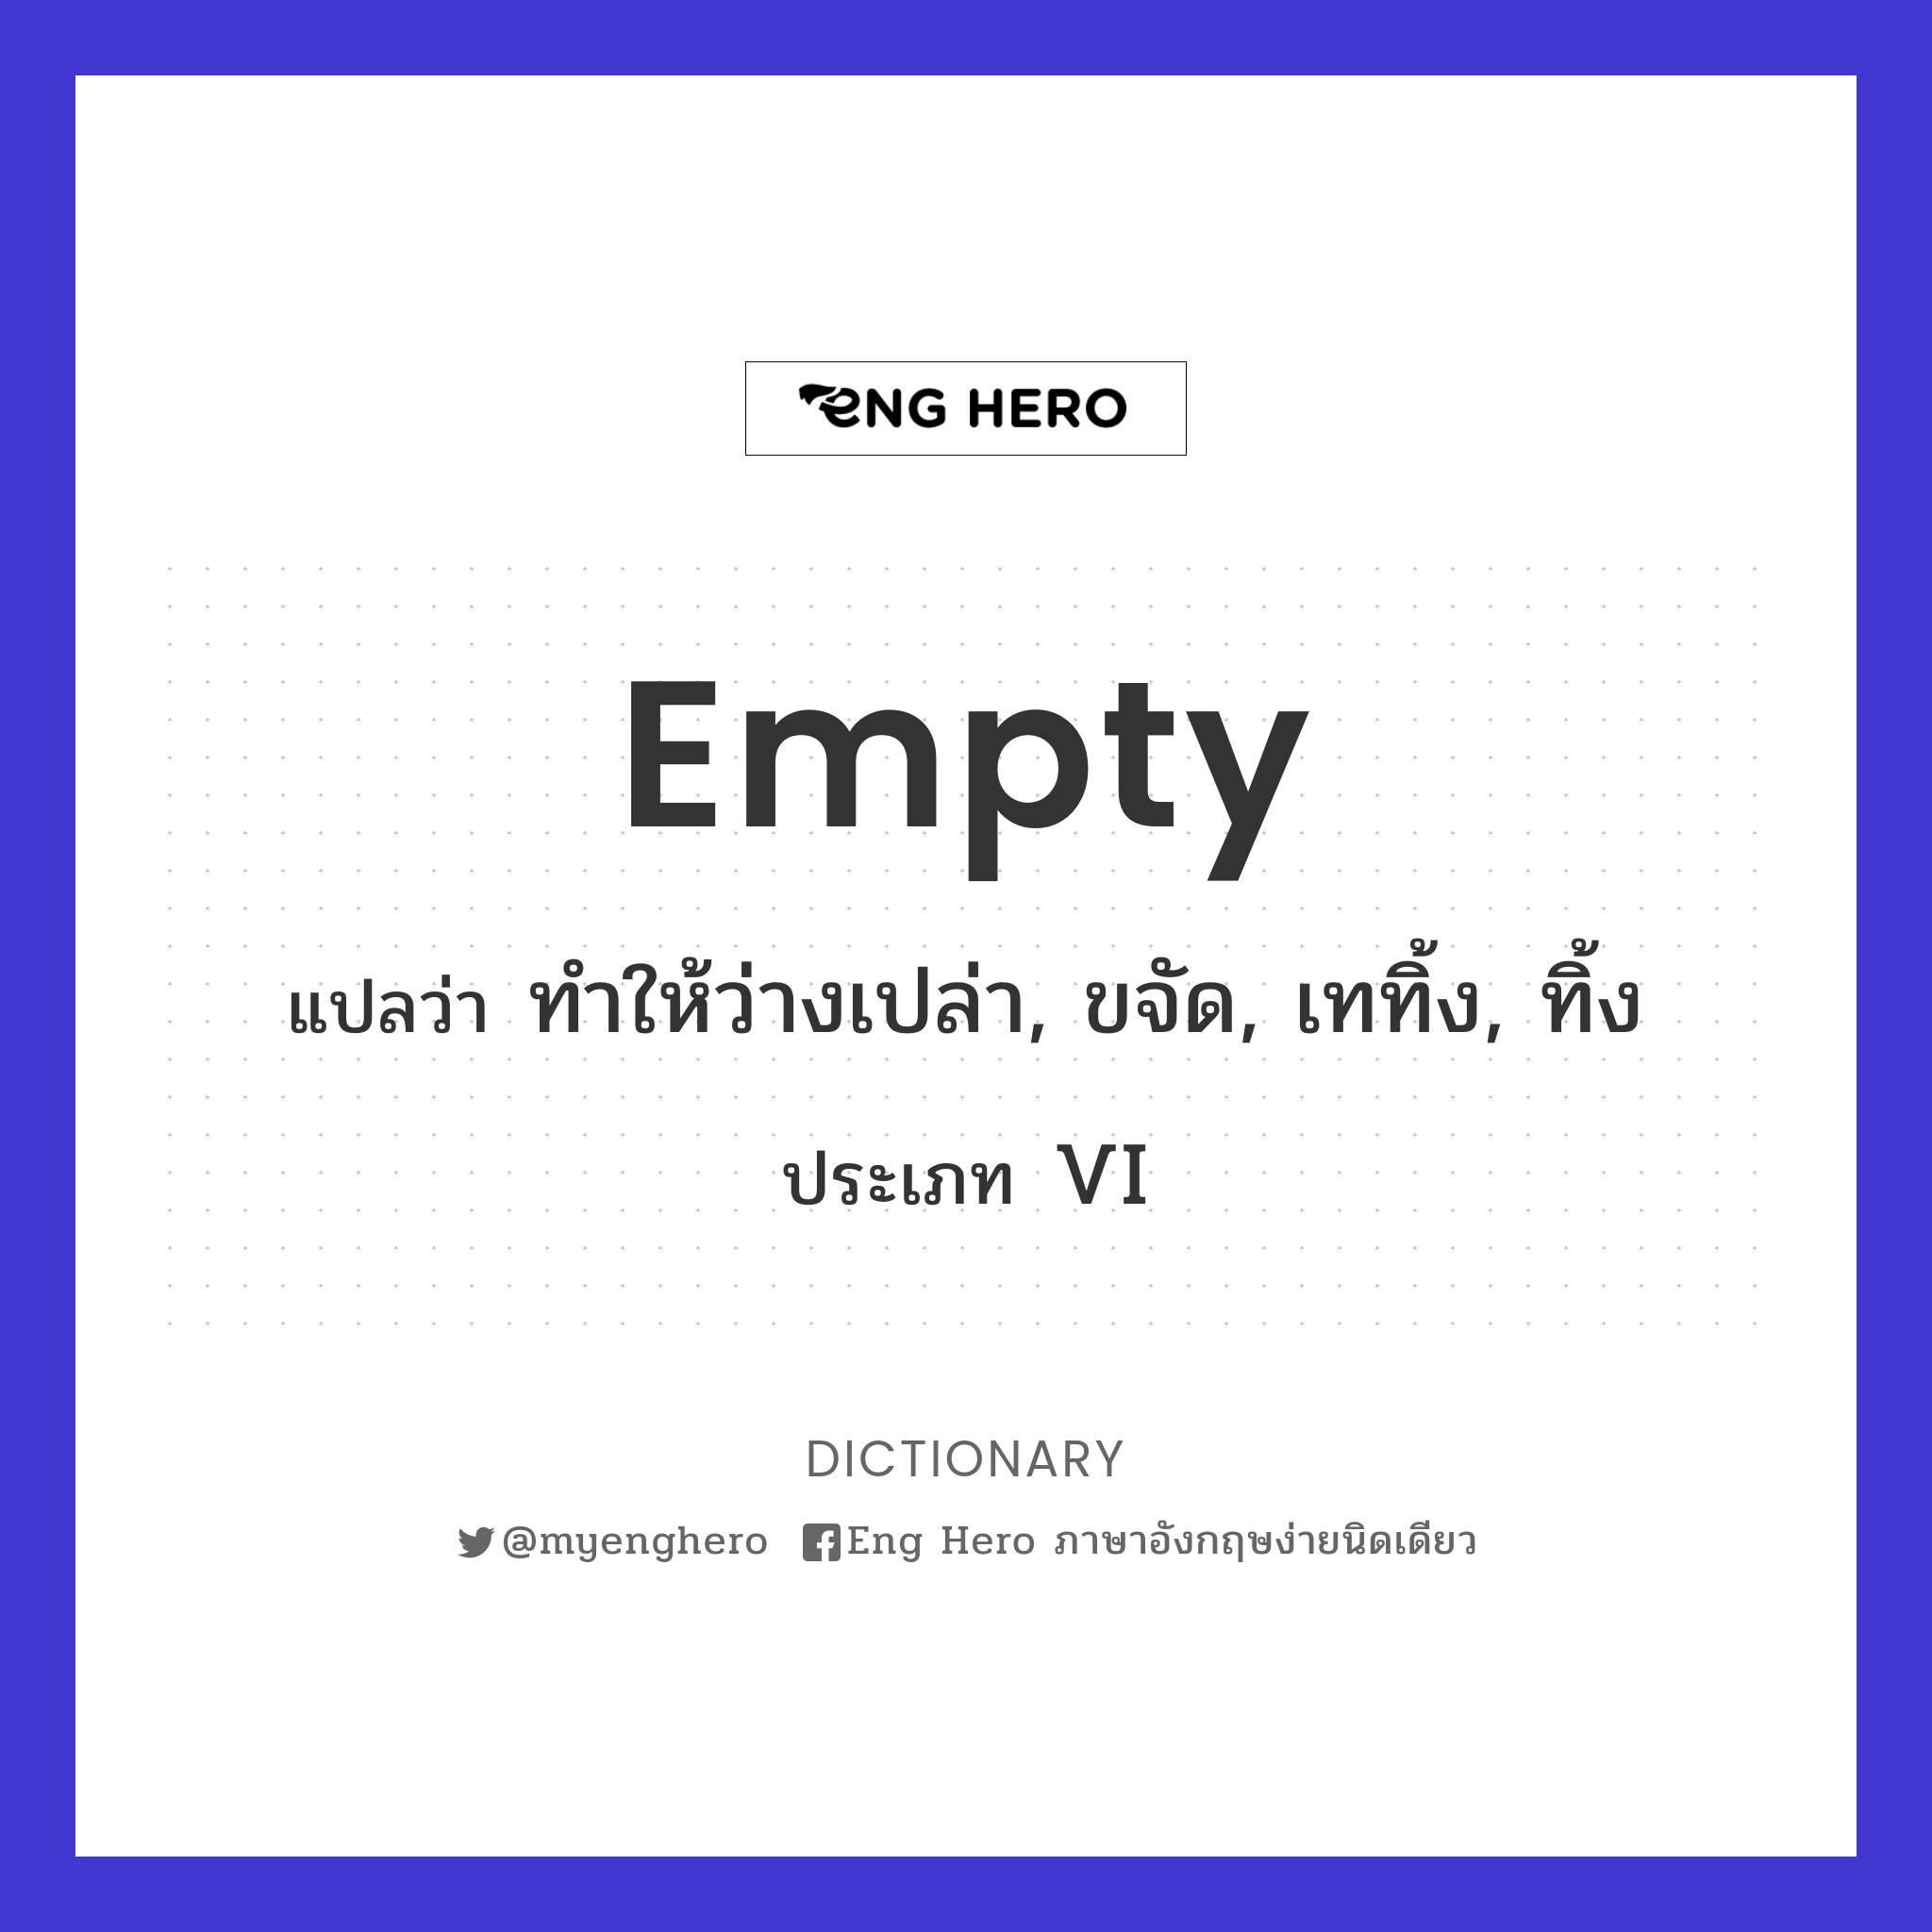 empty